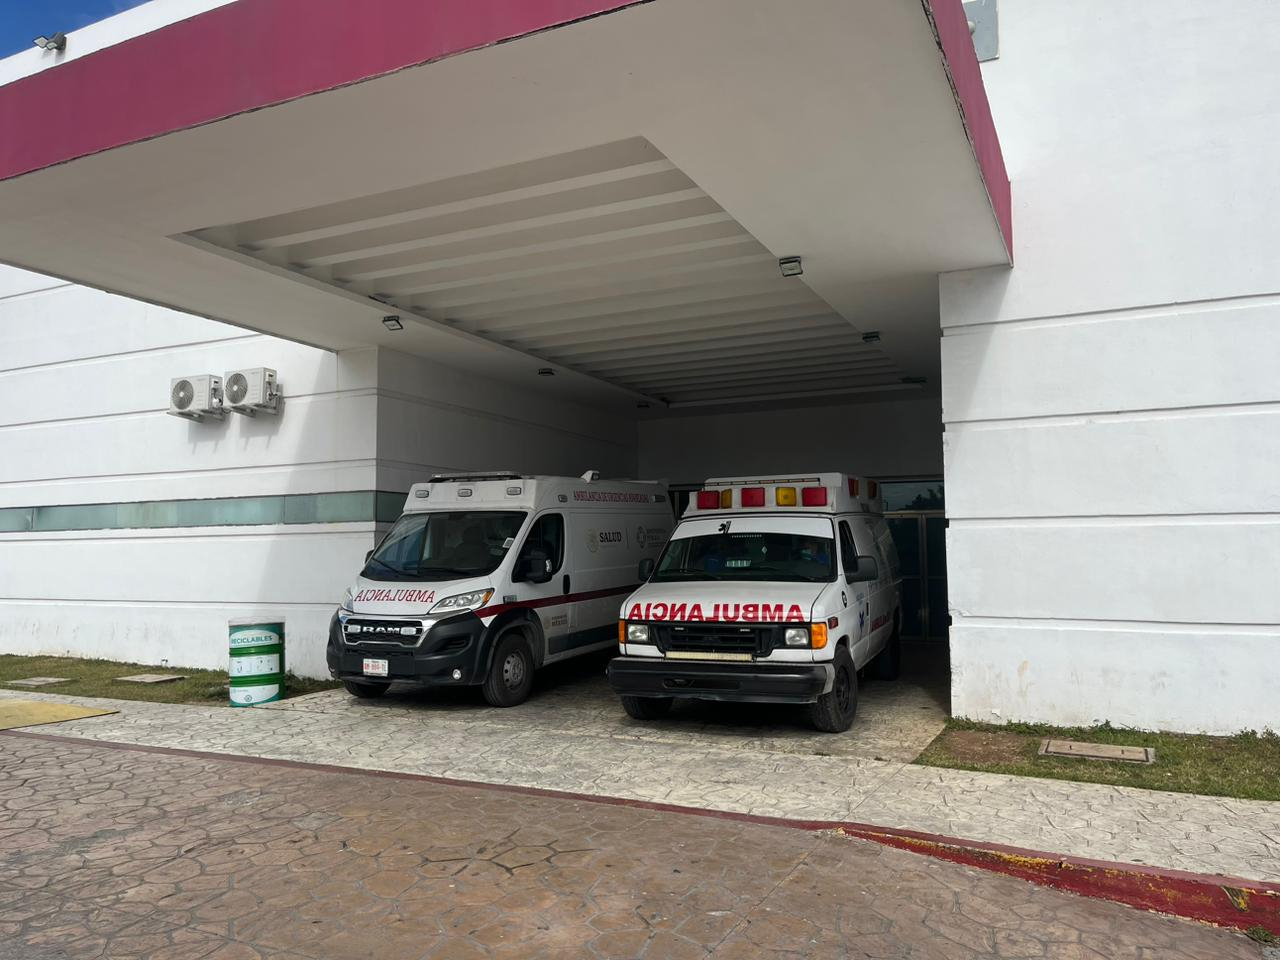 Succar Kuri habría sido hospitalizado de emergencia en Cancún